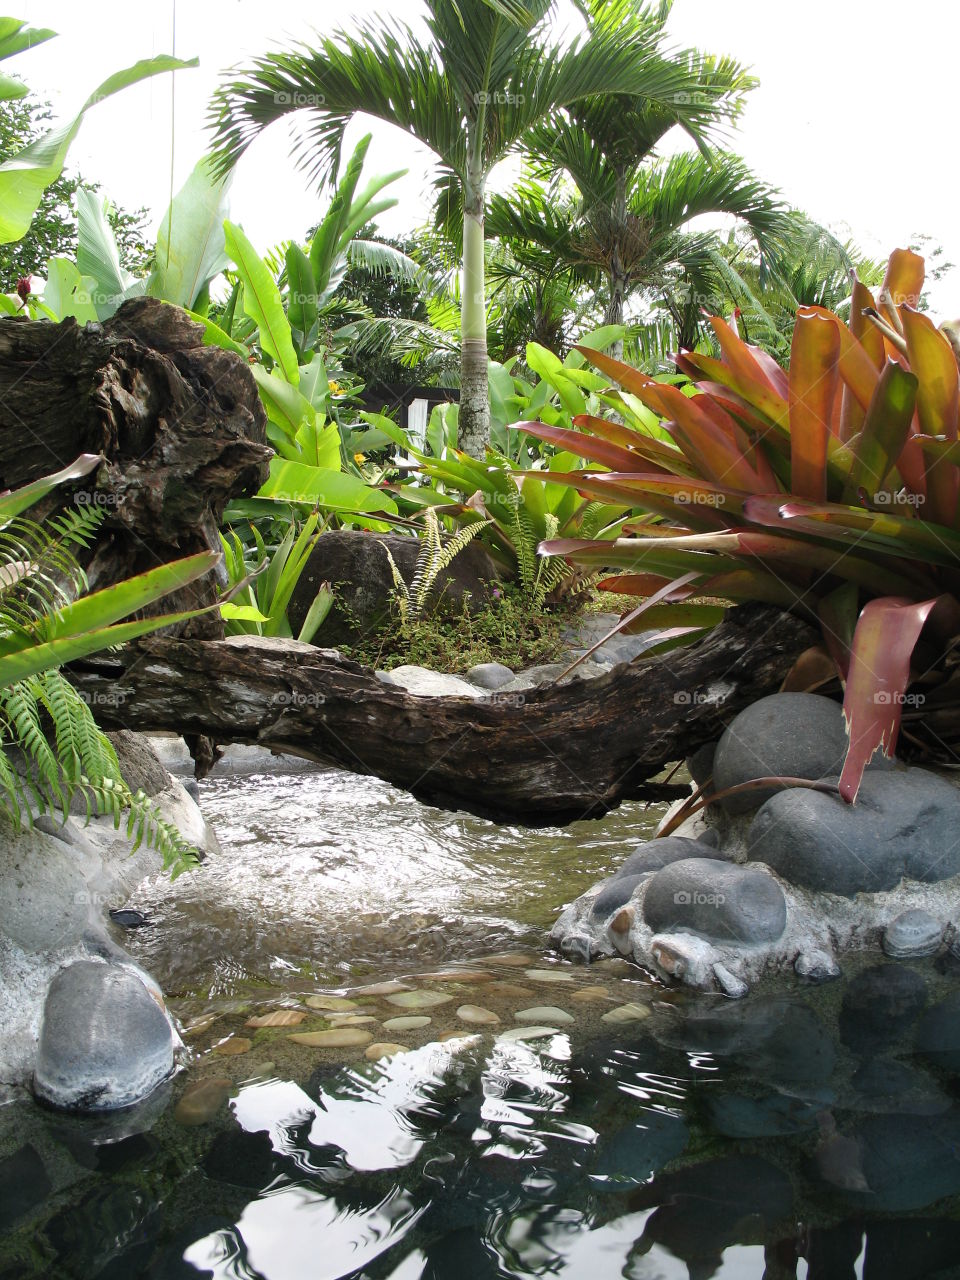 Peaceful tropical garden 